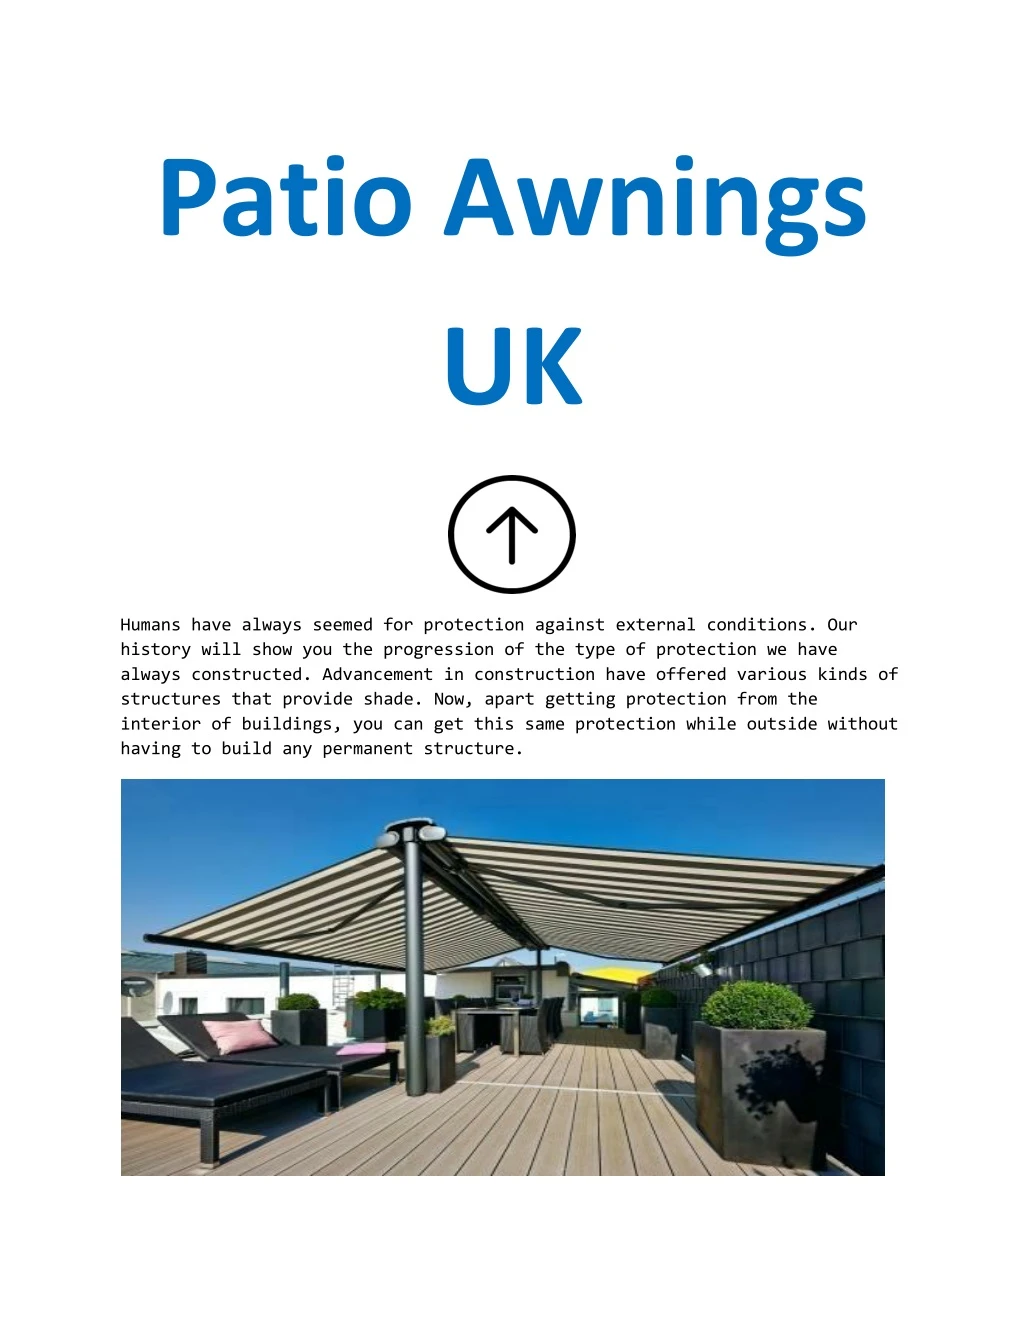 patio awnings uk